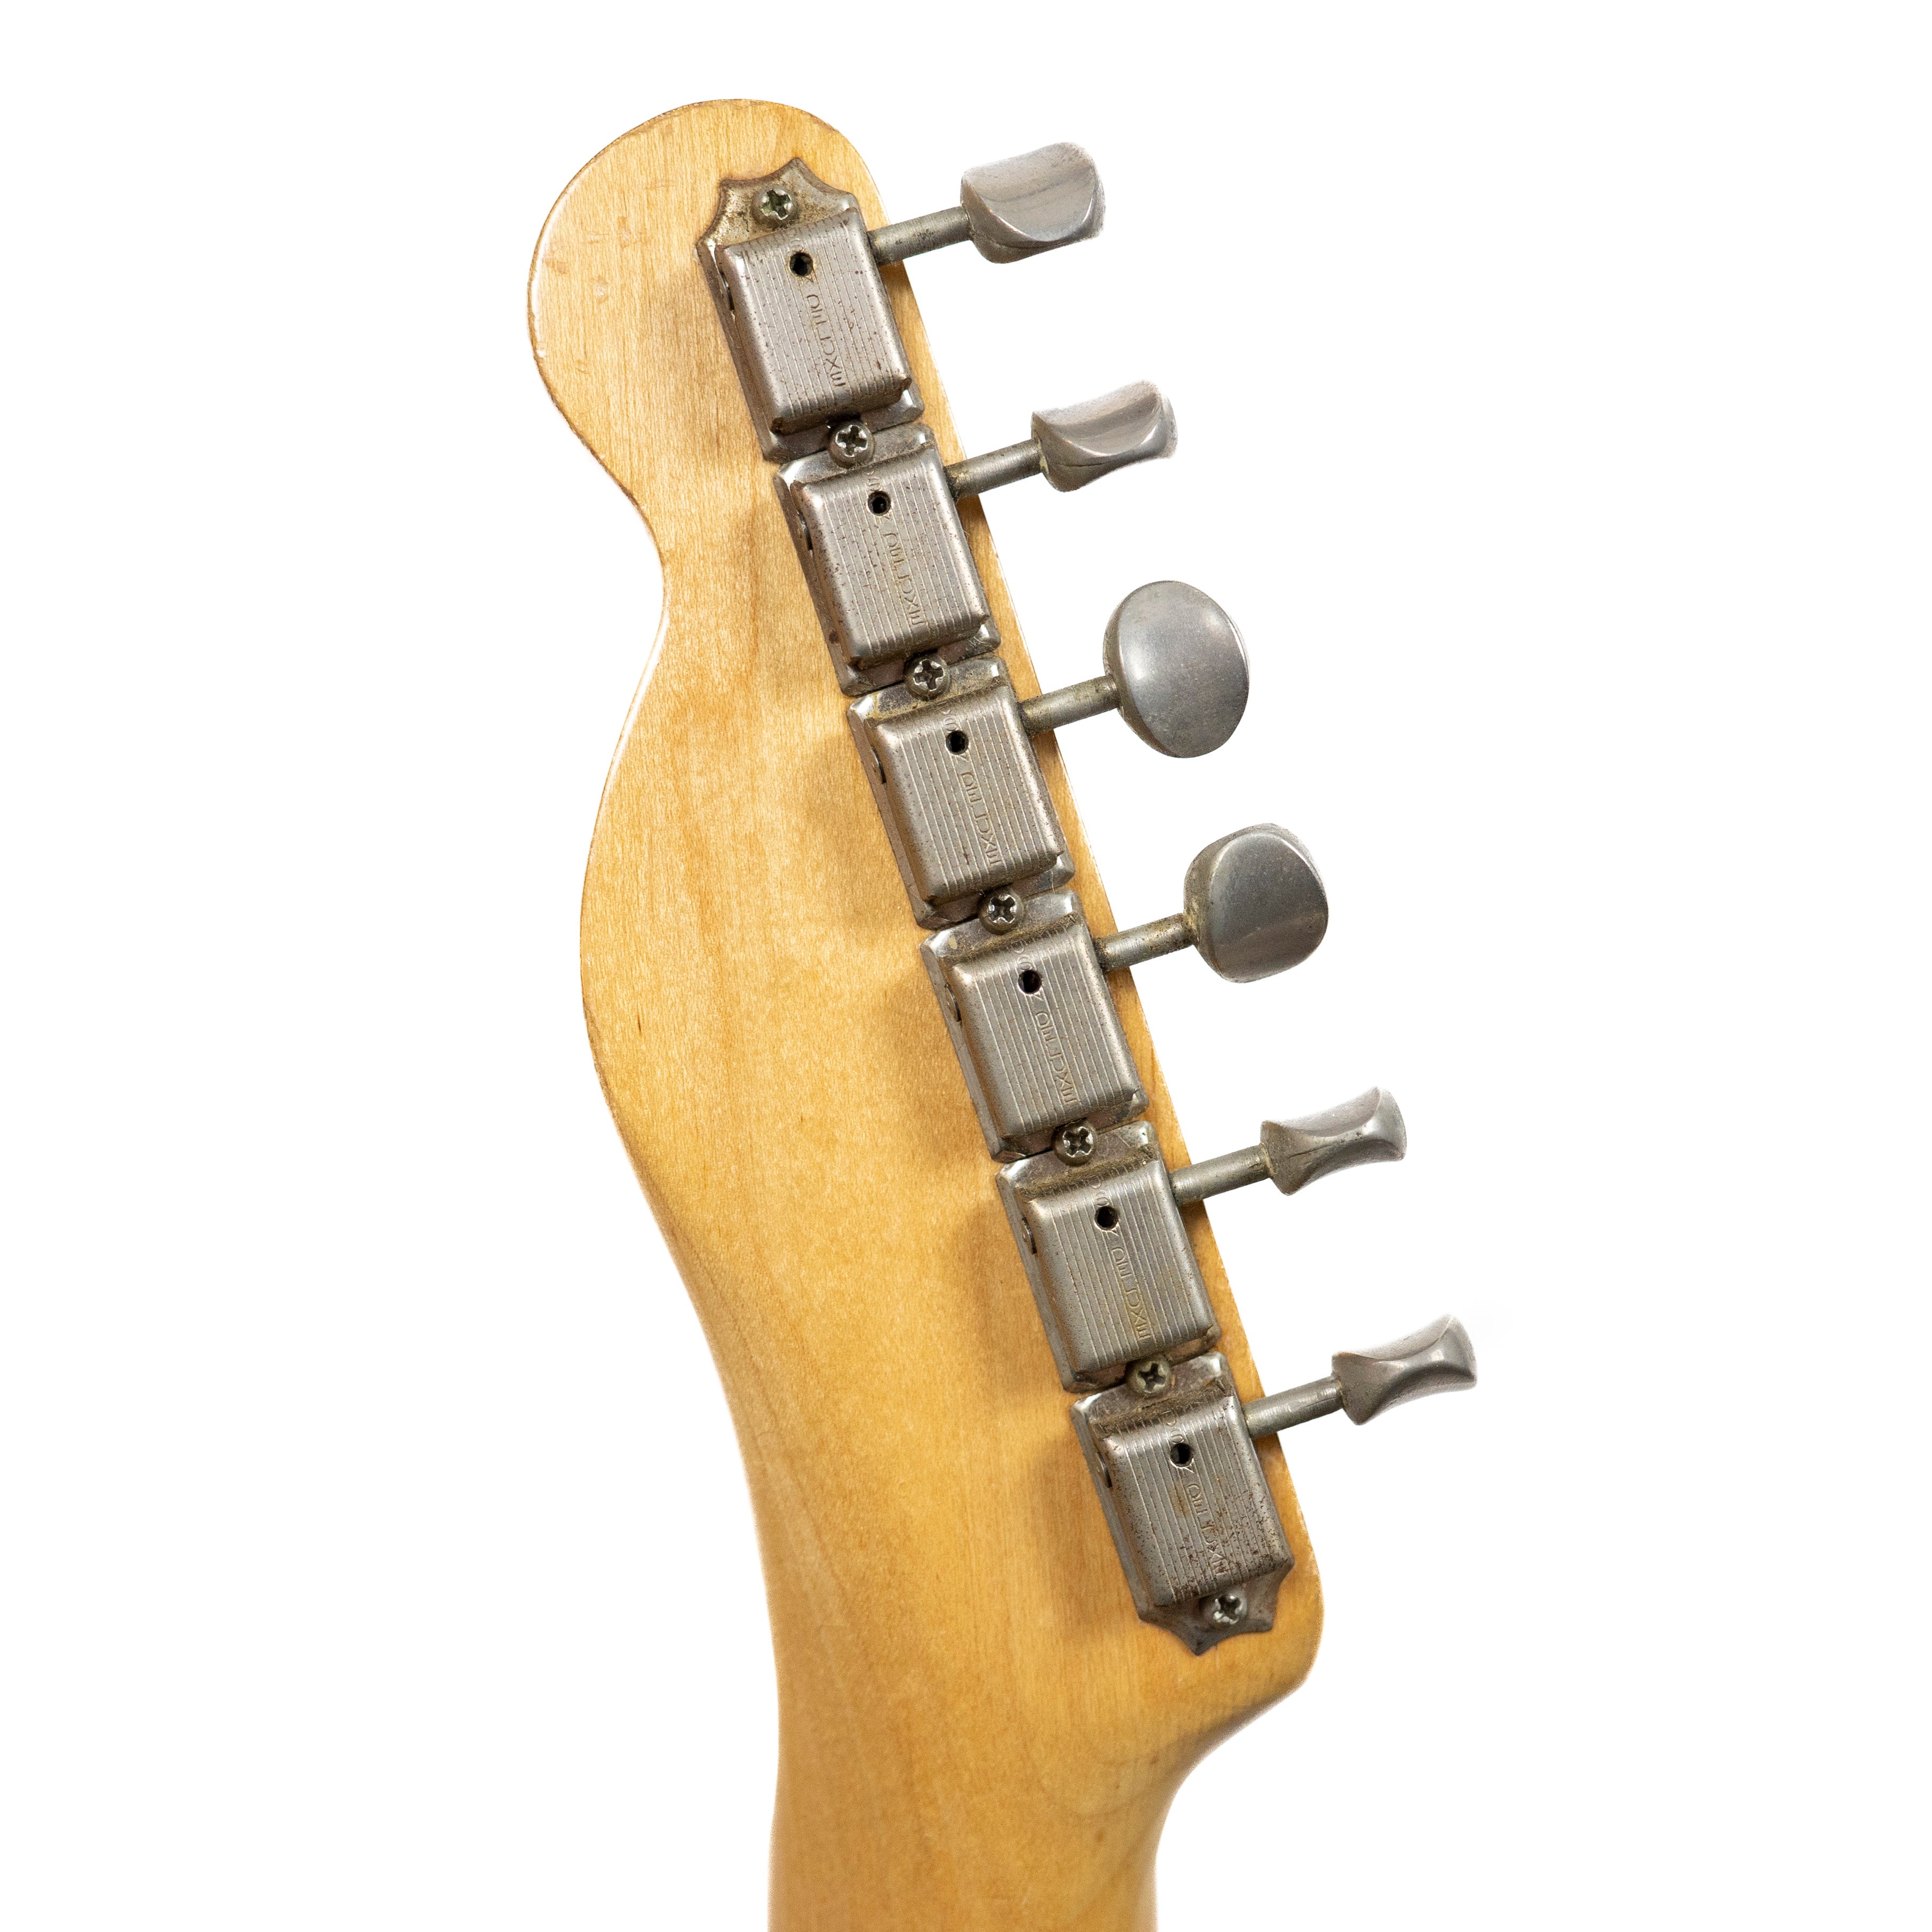 Fender 1959 Esquire Blonde